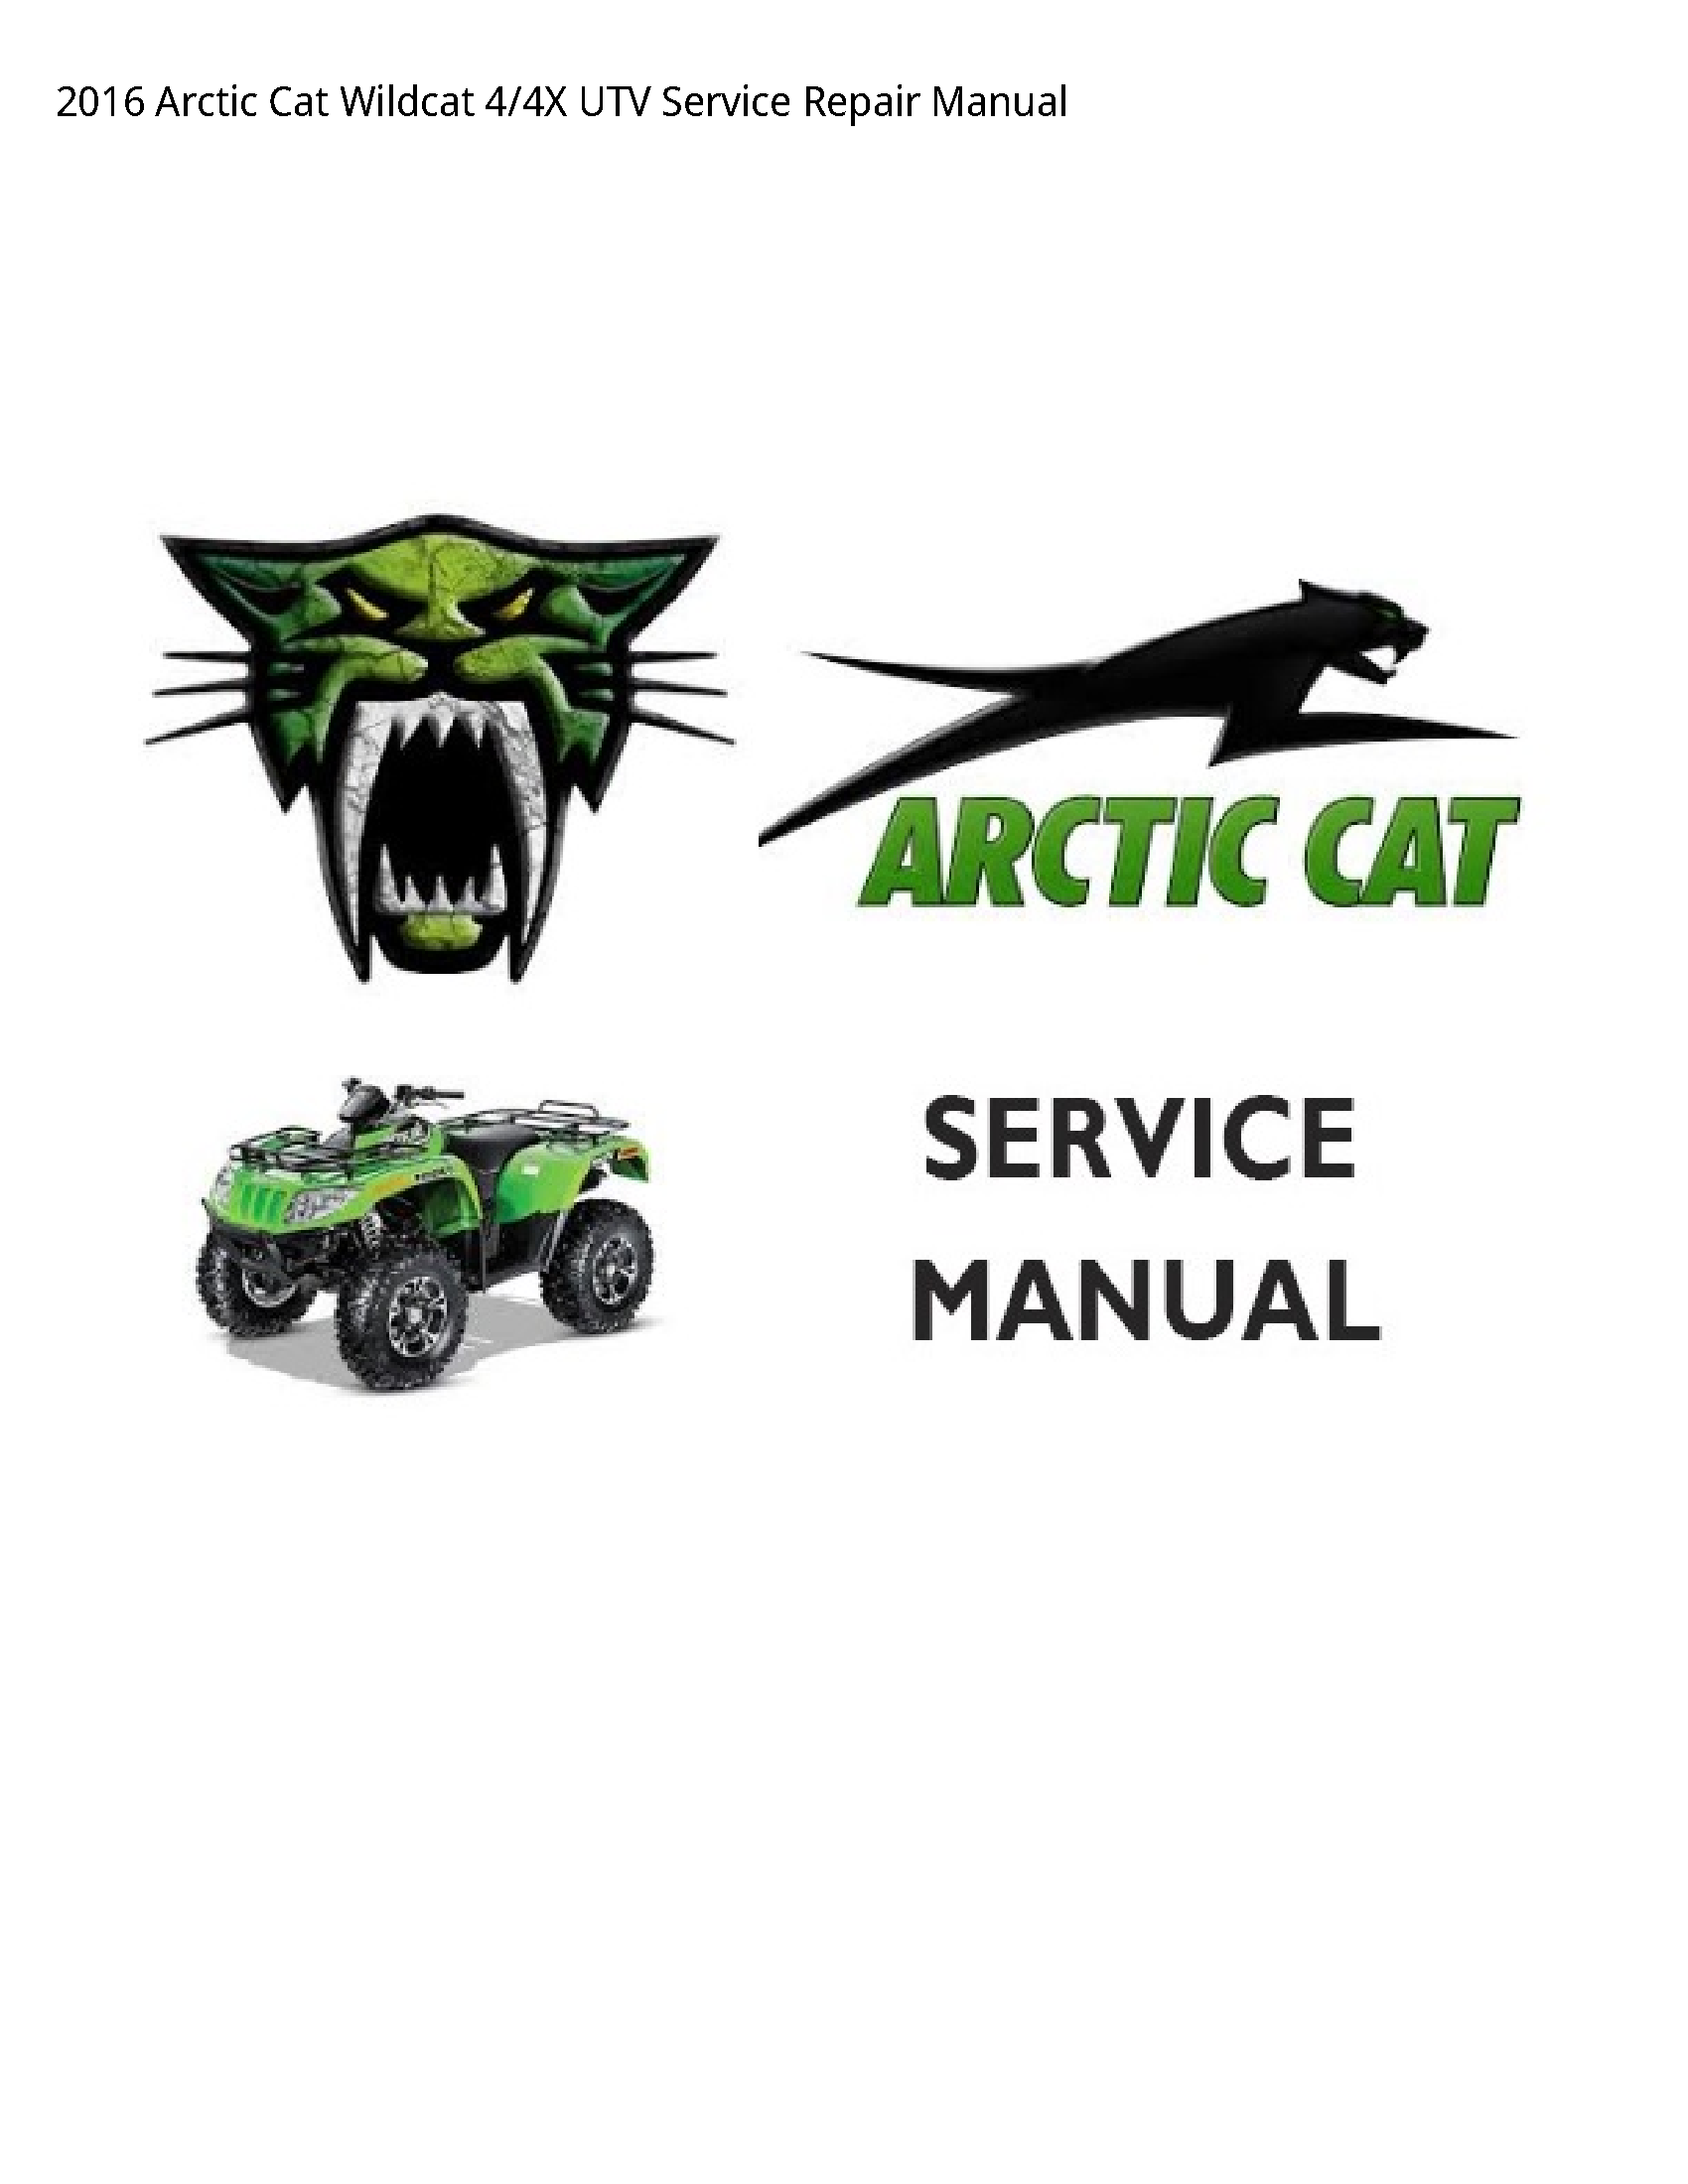 Arctic Cat 4 Wildcat UTV manual